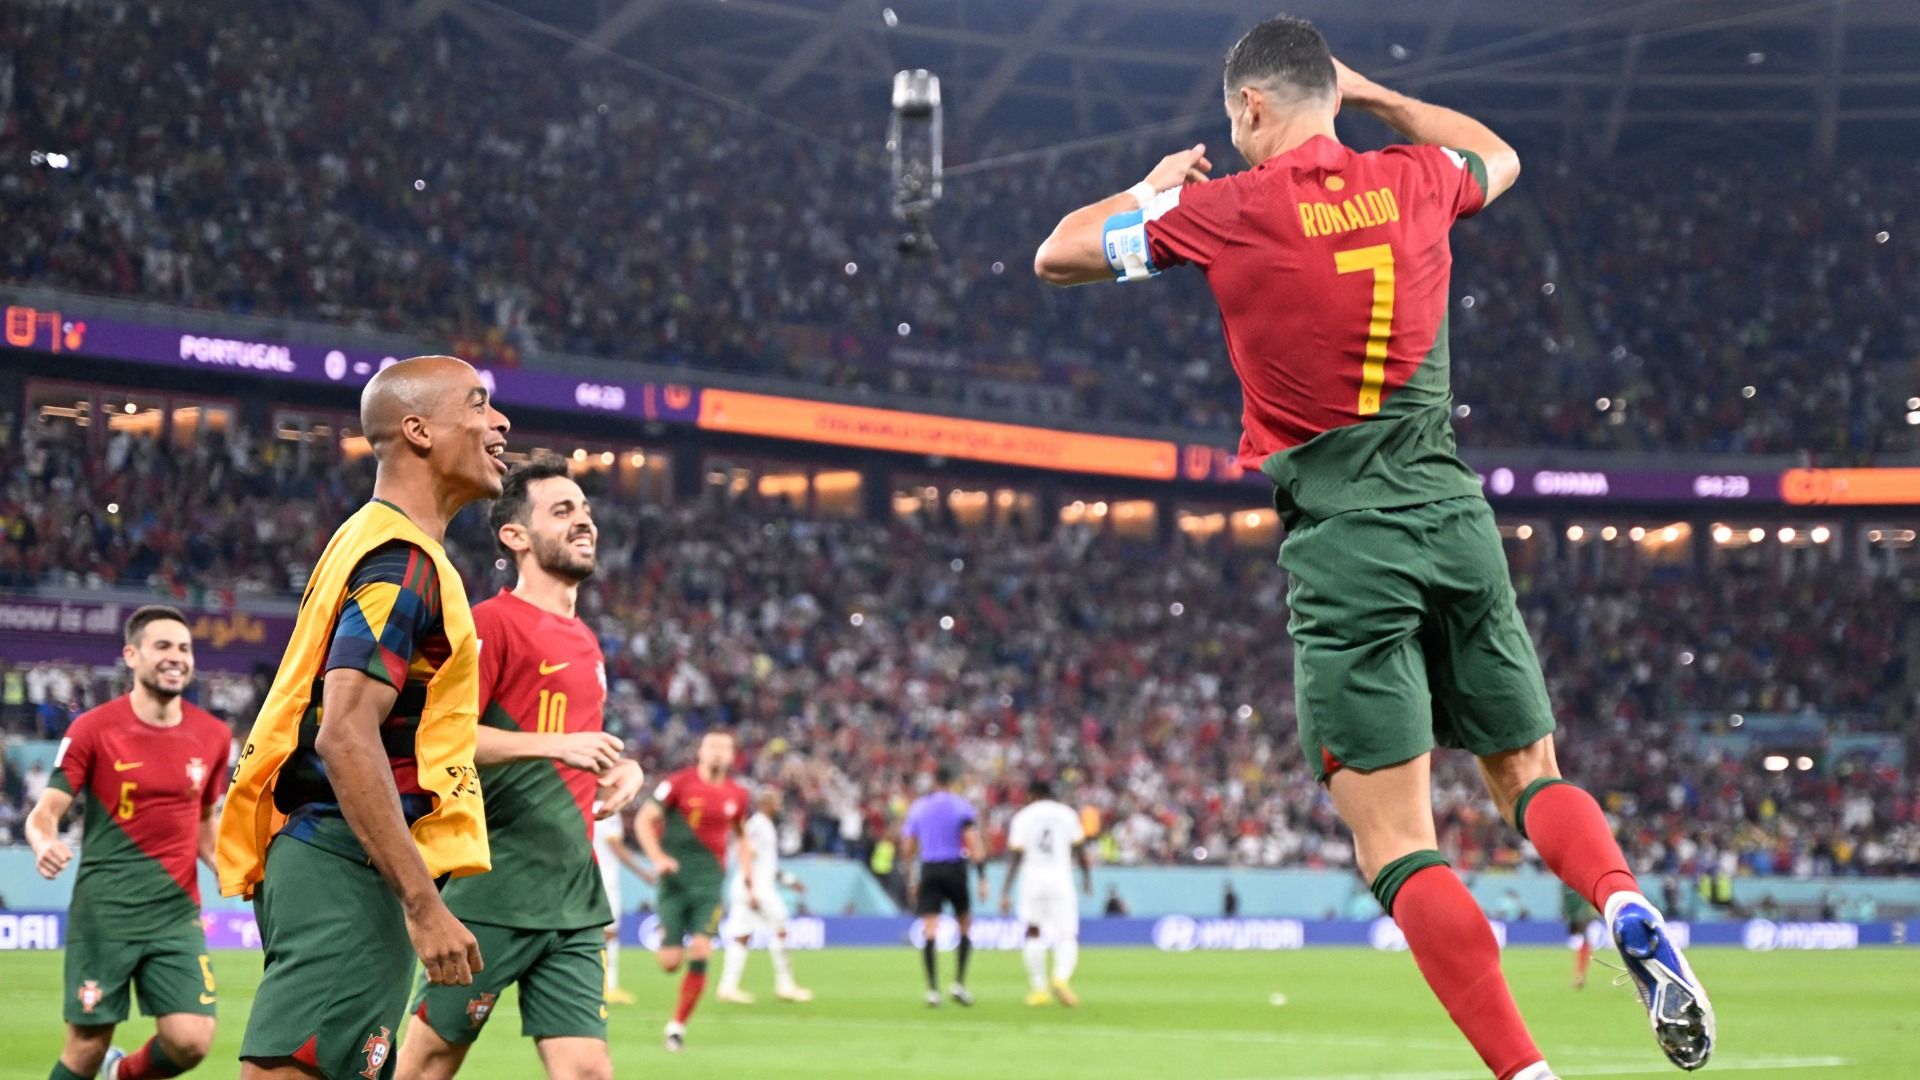 Роналду эмоционально высказался по поводу выхода сборной Португалии в плей-офф ЧМ-2022 в Катаре